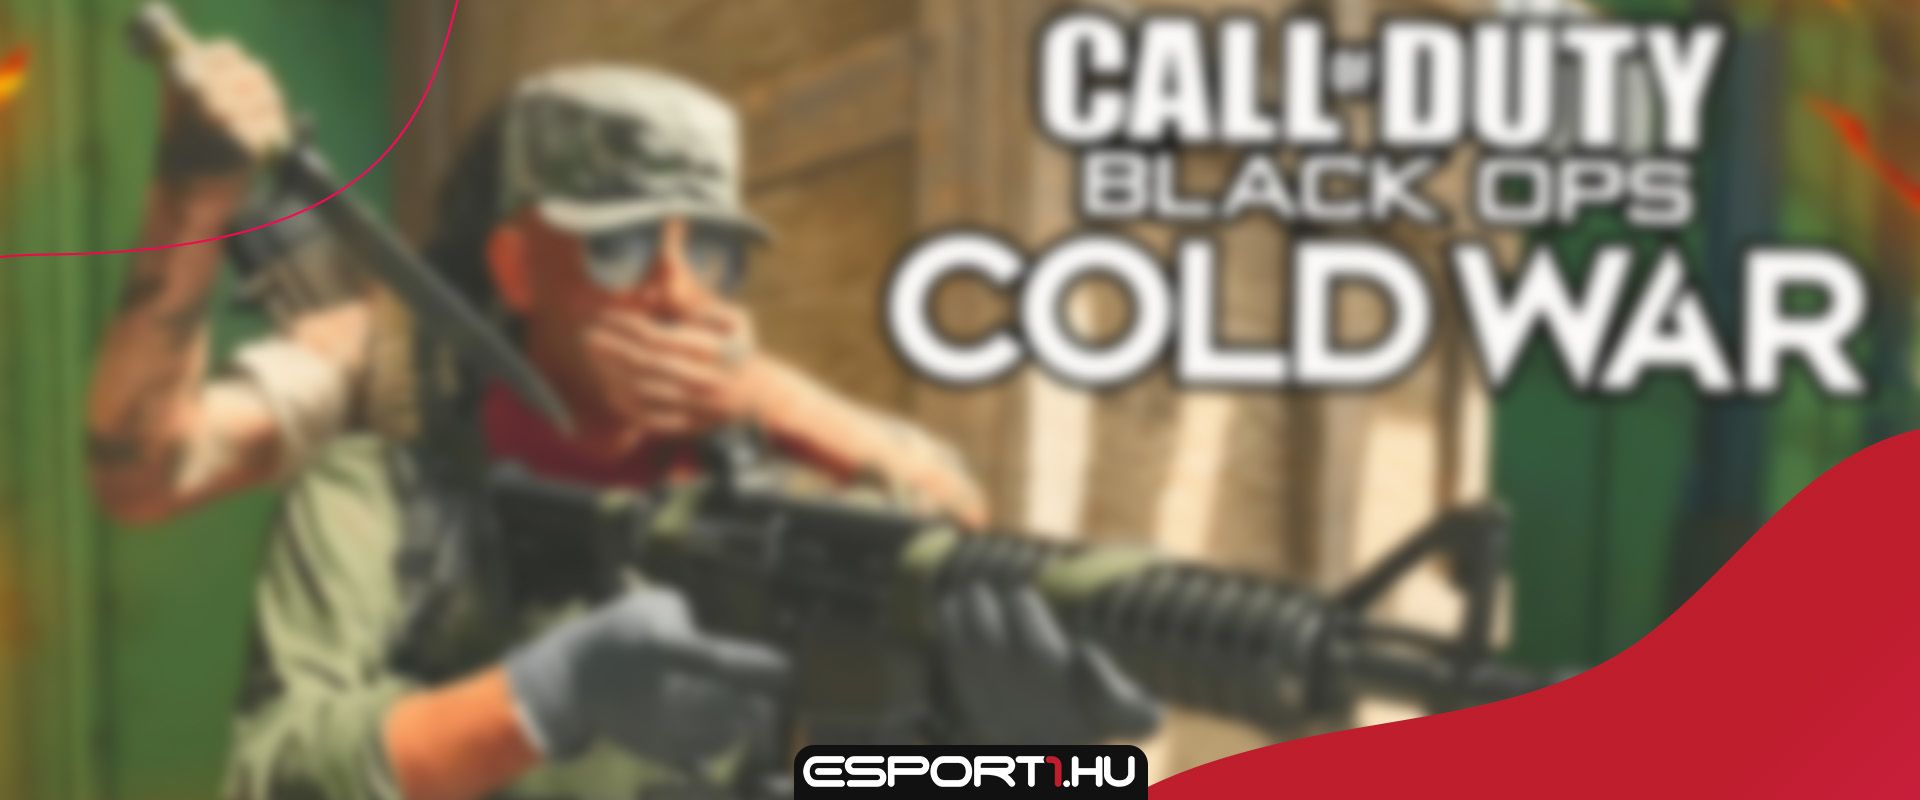 Igazán brutális kivégzéseket vonultat fel a Call of Duty: Black Ops - Cold War